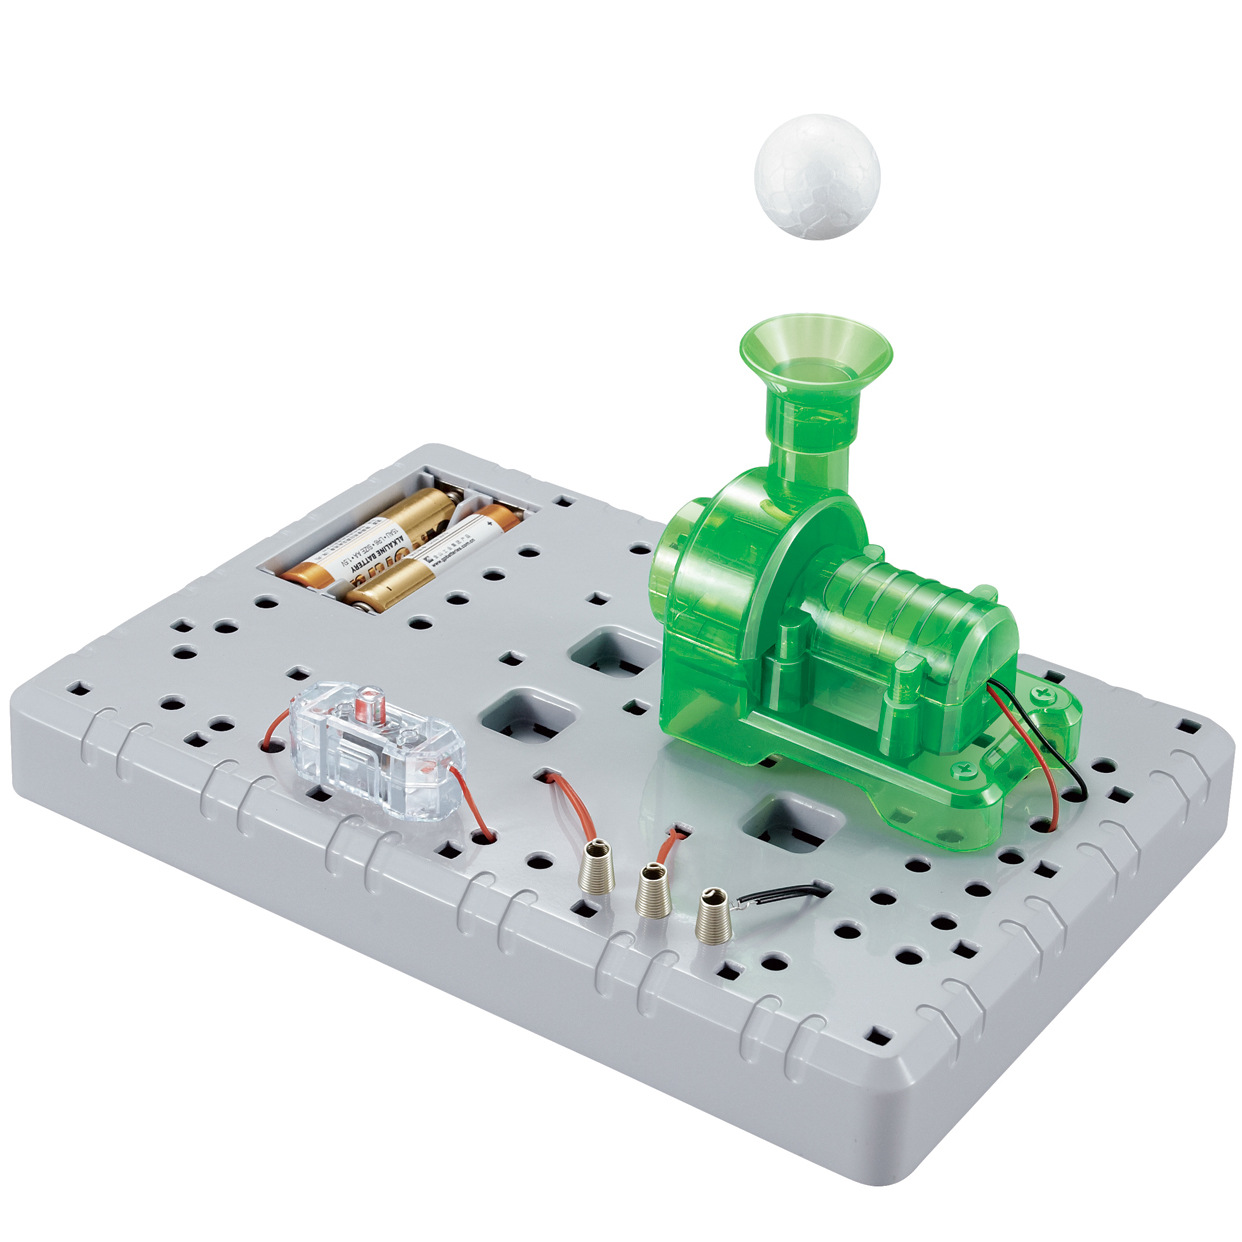 玩具科教 diy自制神奇的浮动球 diy拼装制作 科普器材小制作